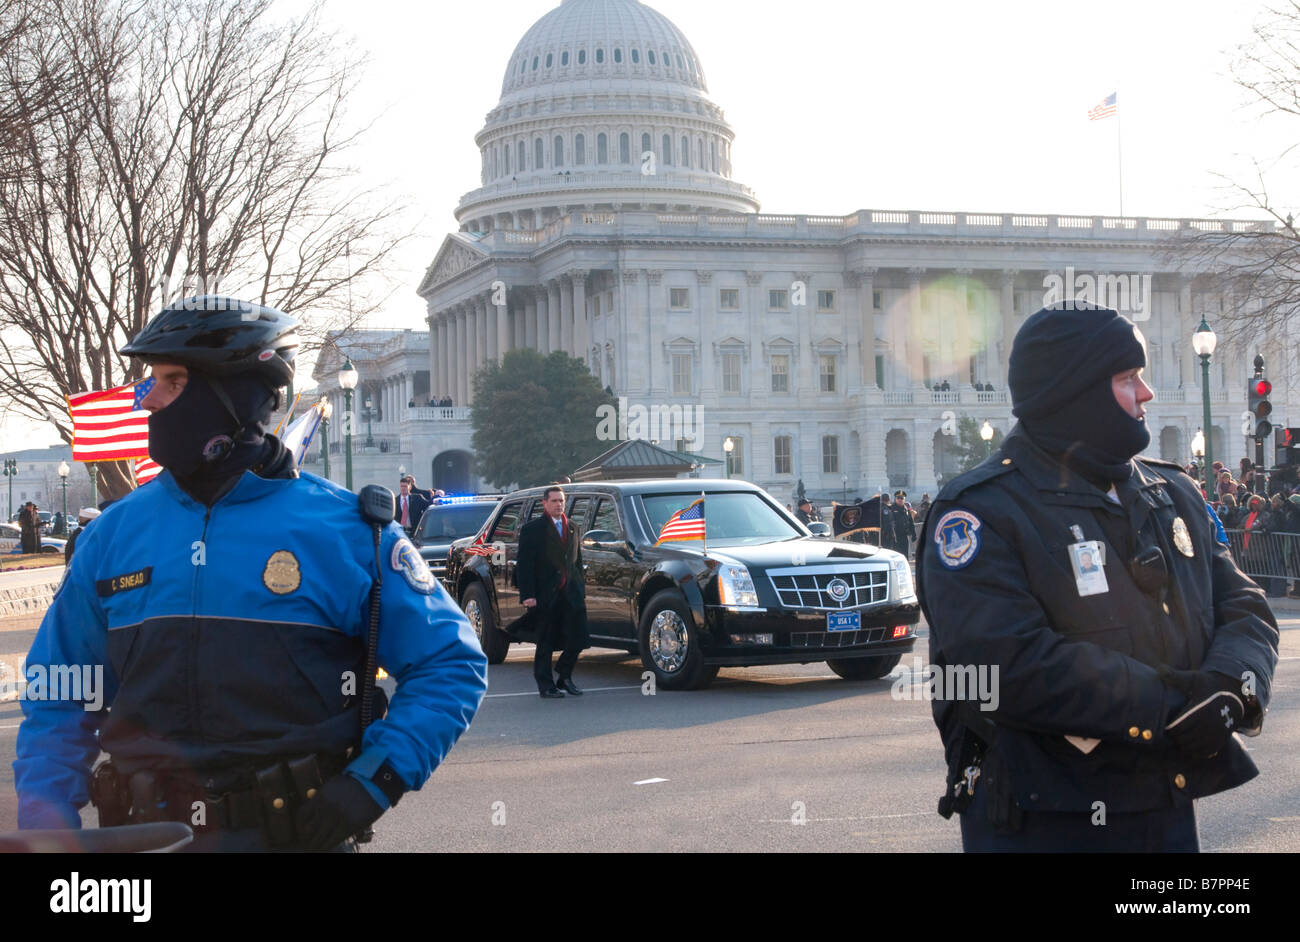 La polizia custodisca la limousine che trasportano il Presidente Barack Obama DA PARTE DEGLI STATI UNITI Capitol alla Casa Bianca il giorno dell'inaugurazione. Foto Stock